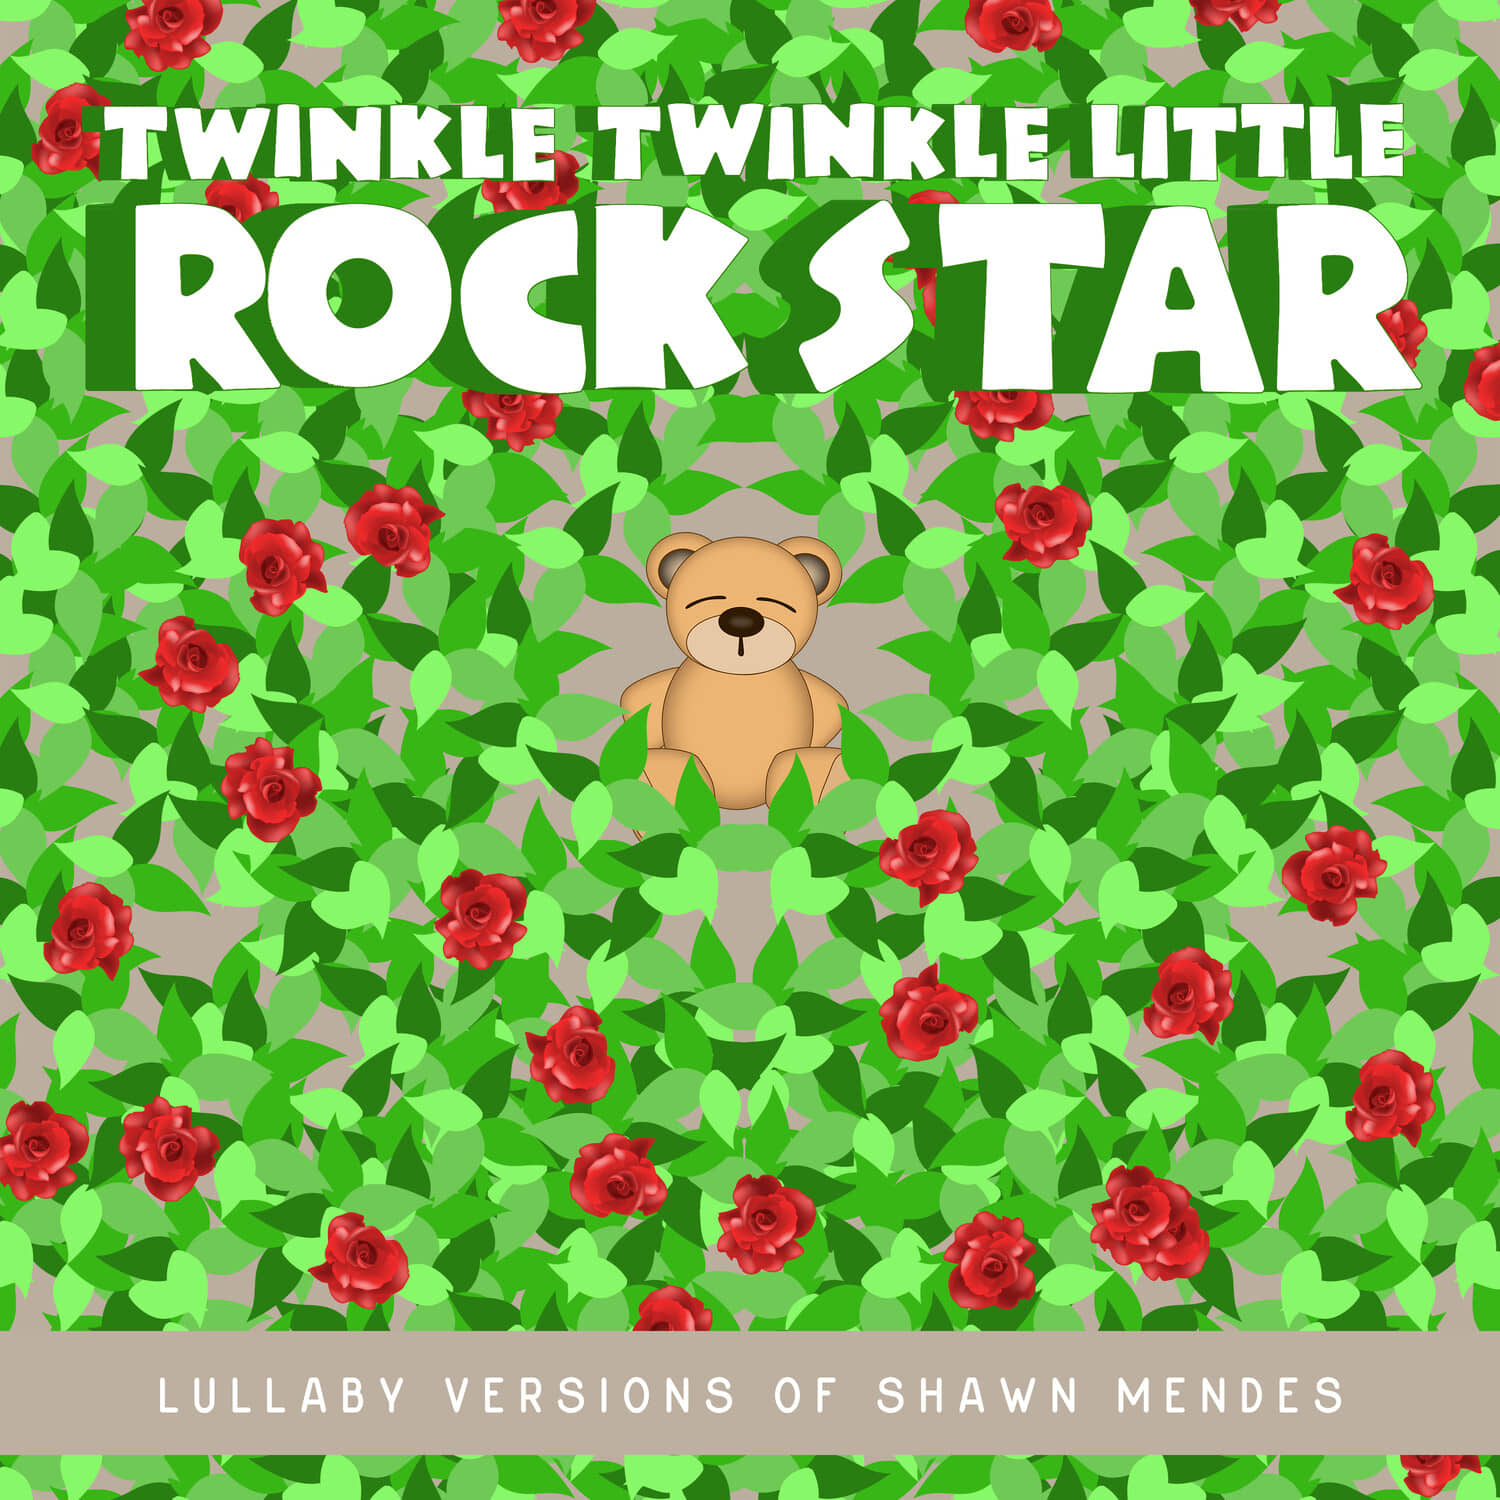 Twinkle Twinkle Little Rock Star-Se?orita